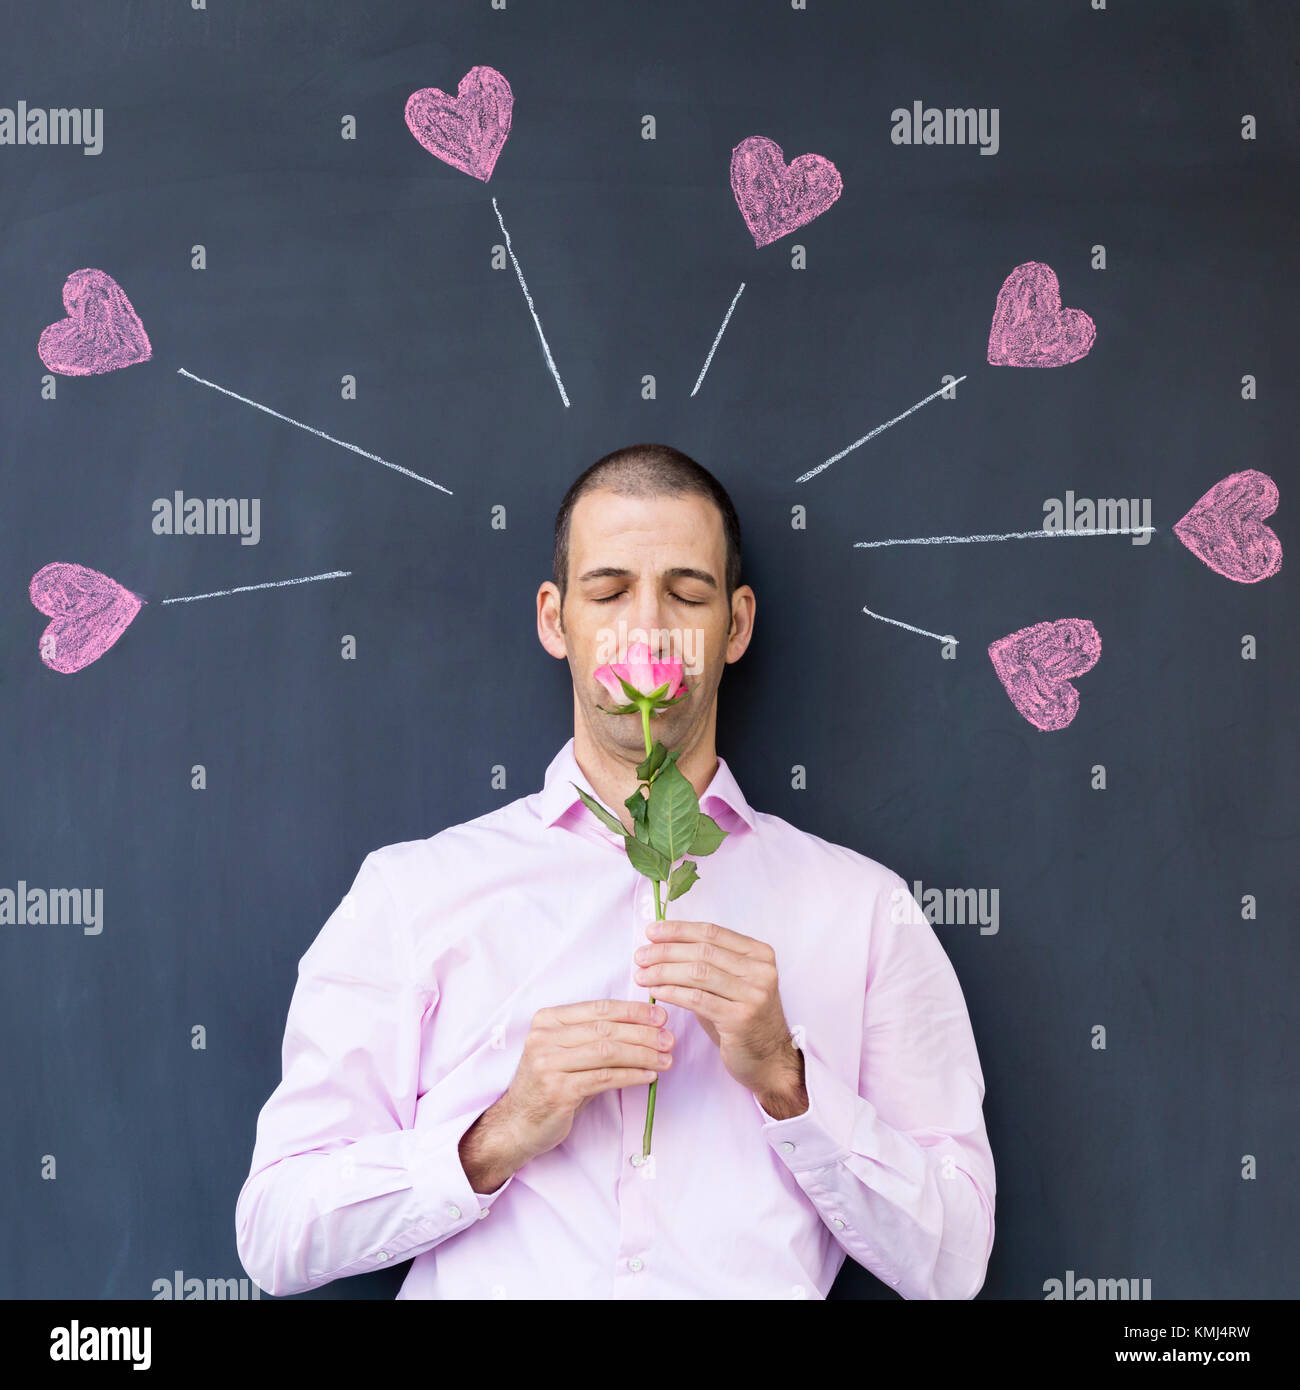 Seul adulte homme blanc portant une chemise rose, debout devant un tableau noir avec coeurs peints tenant une rose. Concept de l'amour fou. Banque D'Images